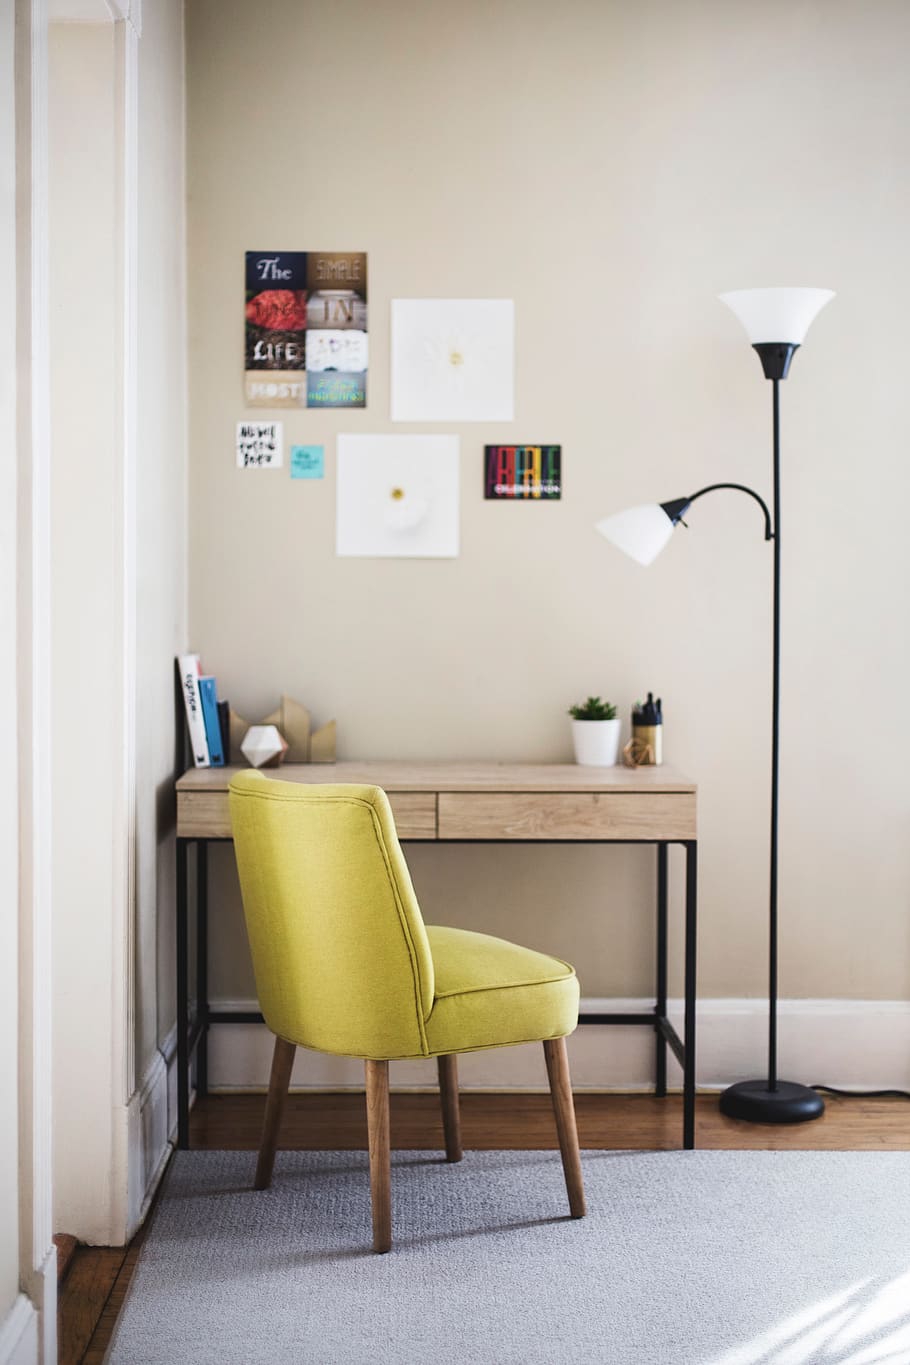 mesa, silla, escritorio, lámpara, habitación, alfombra, libros, bolígrafos, pósters, calcomanías